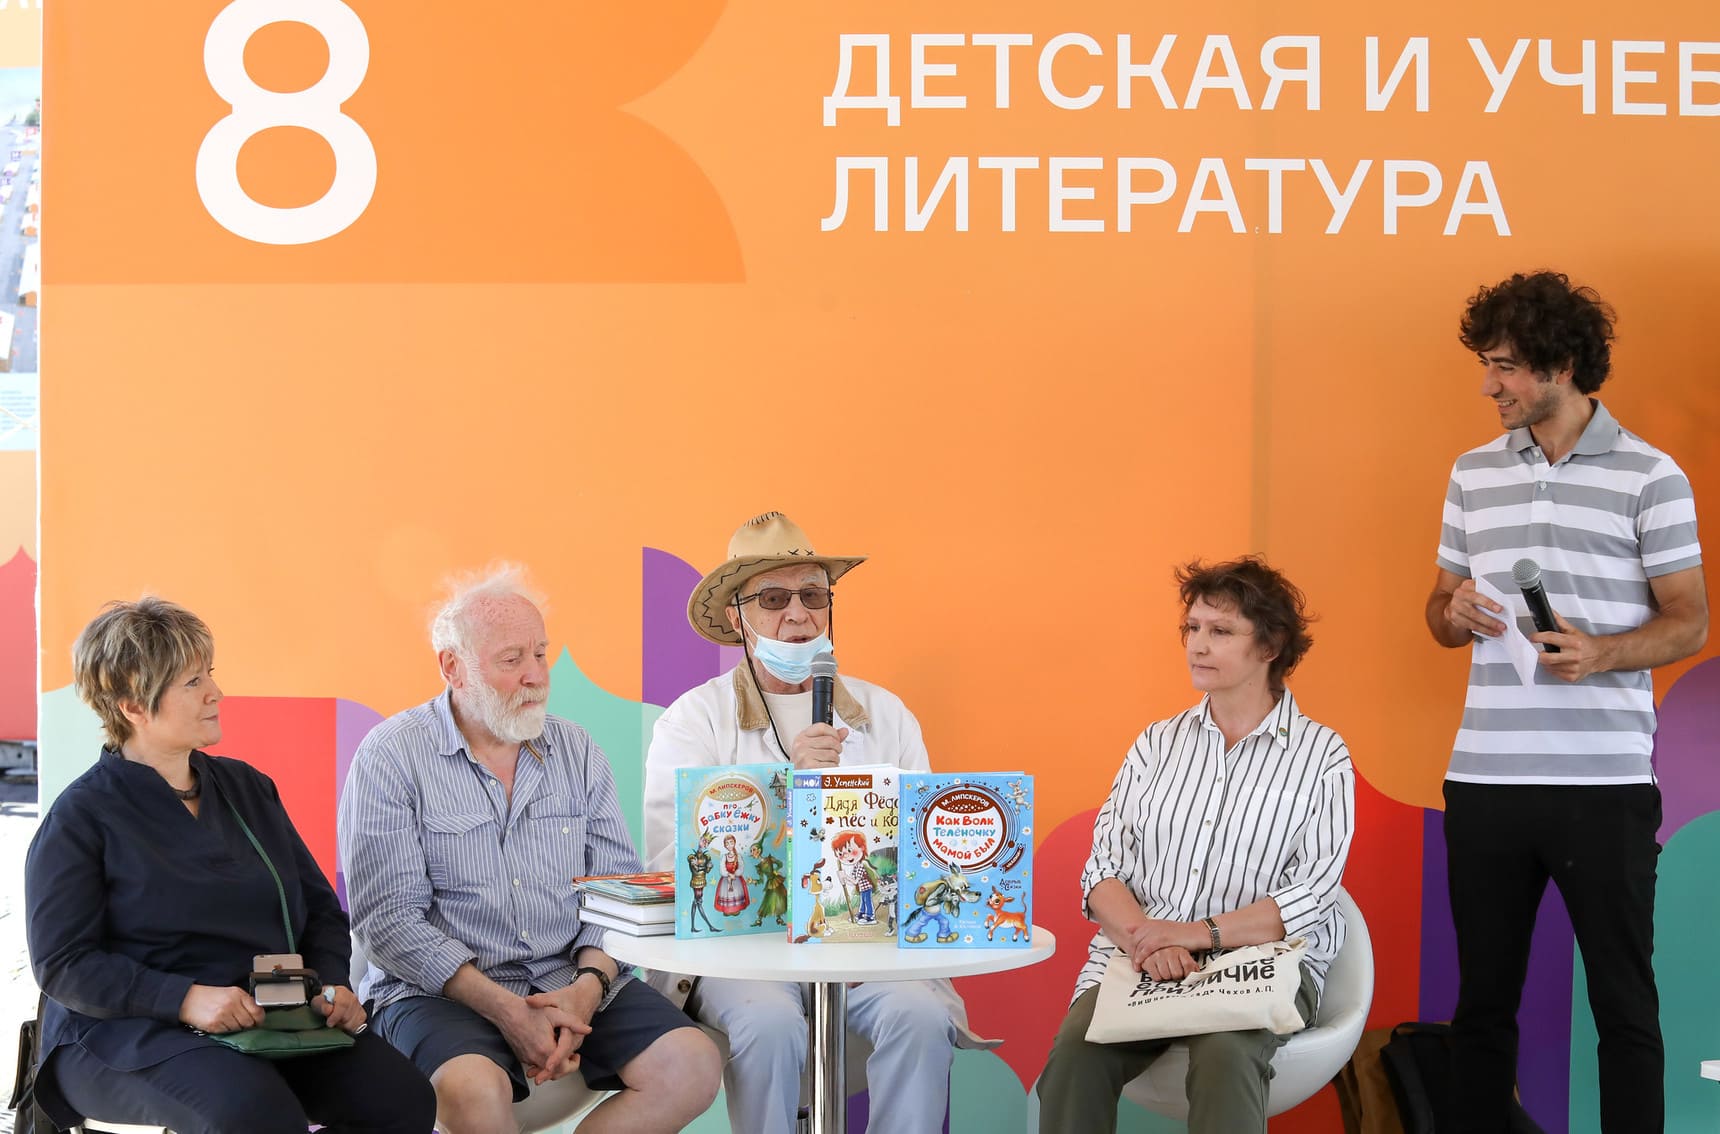 Ольга Боголюбова, Юрий Норштейн, Михаил Липскеров, Наталья Давыдова, Илья Кожухарь